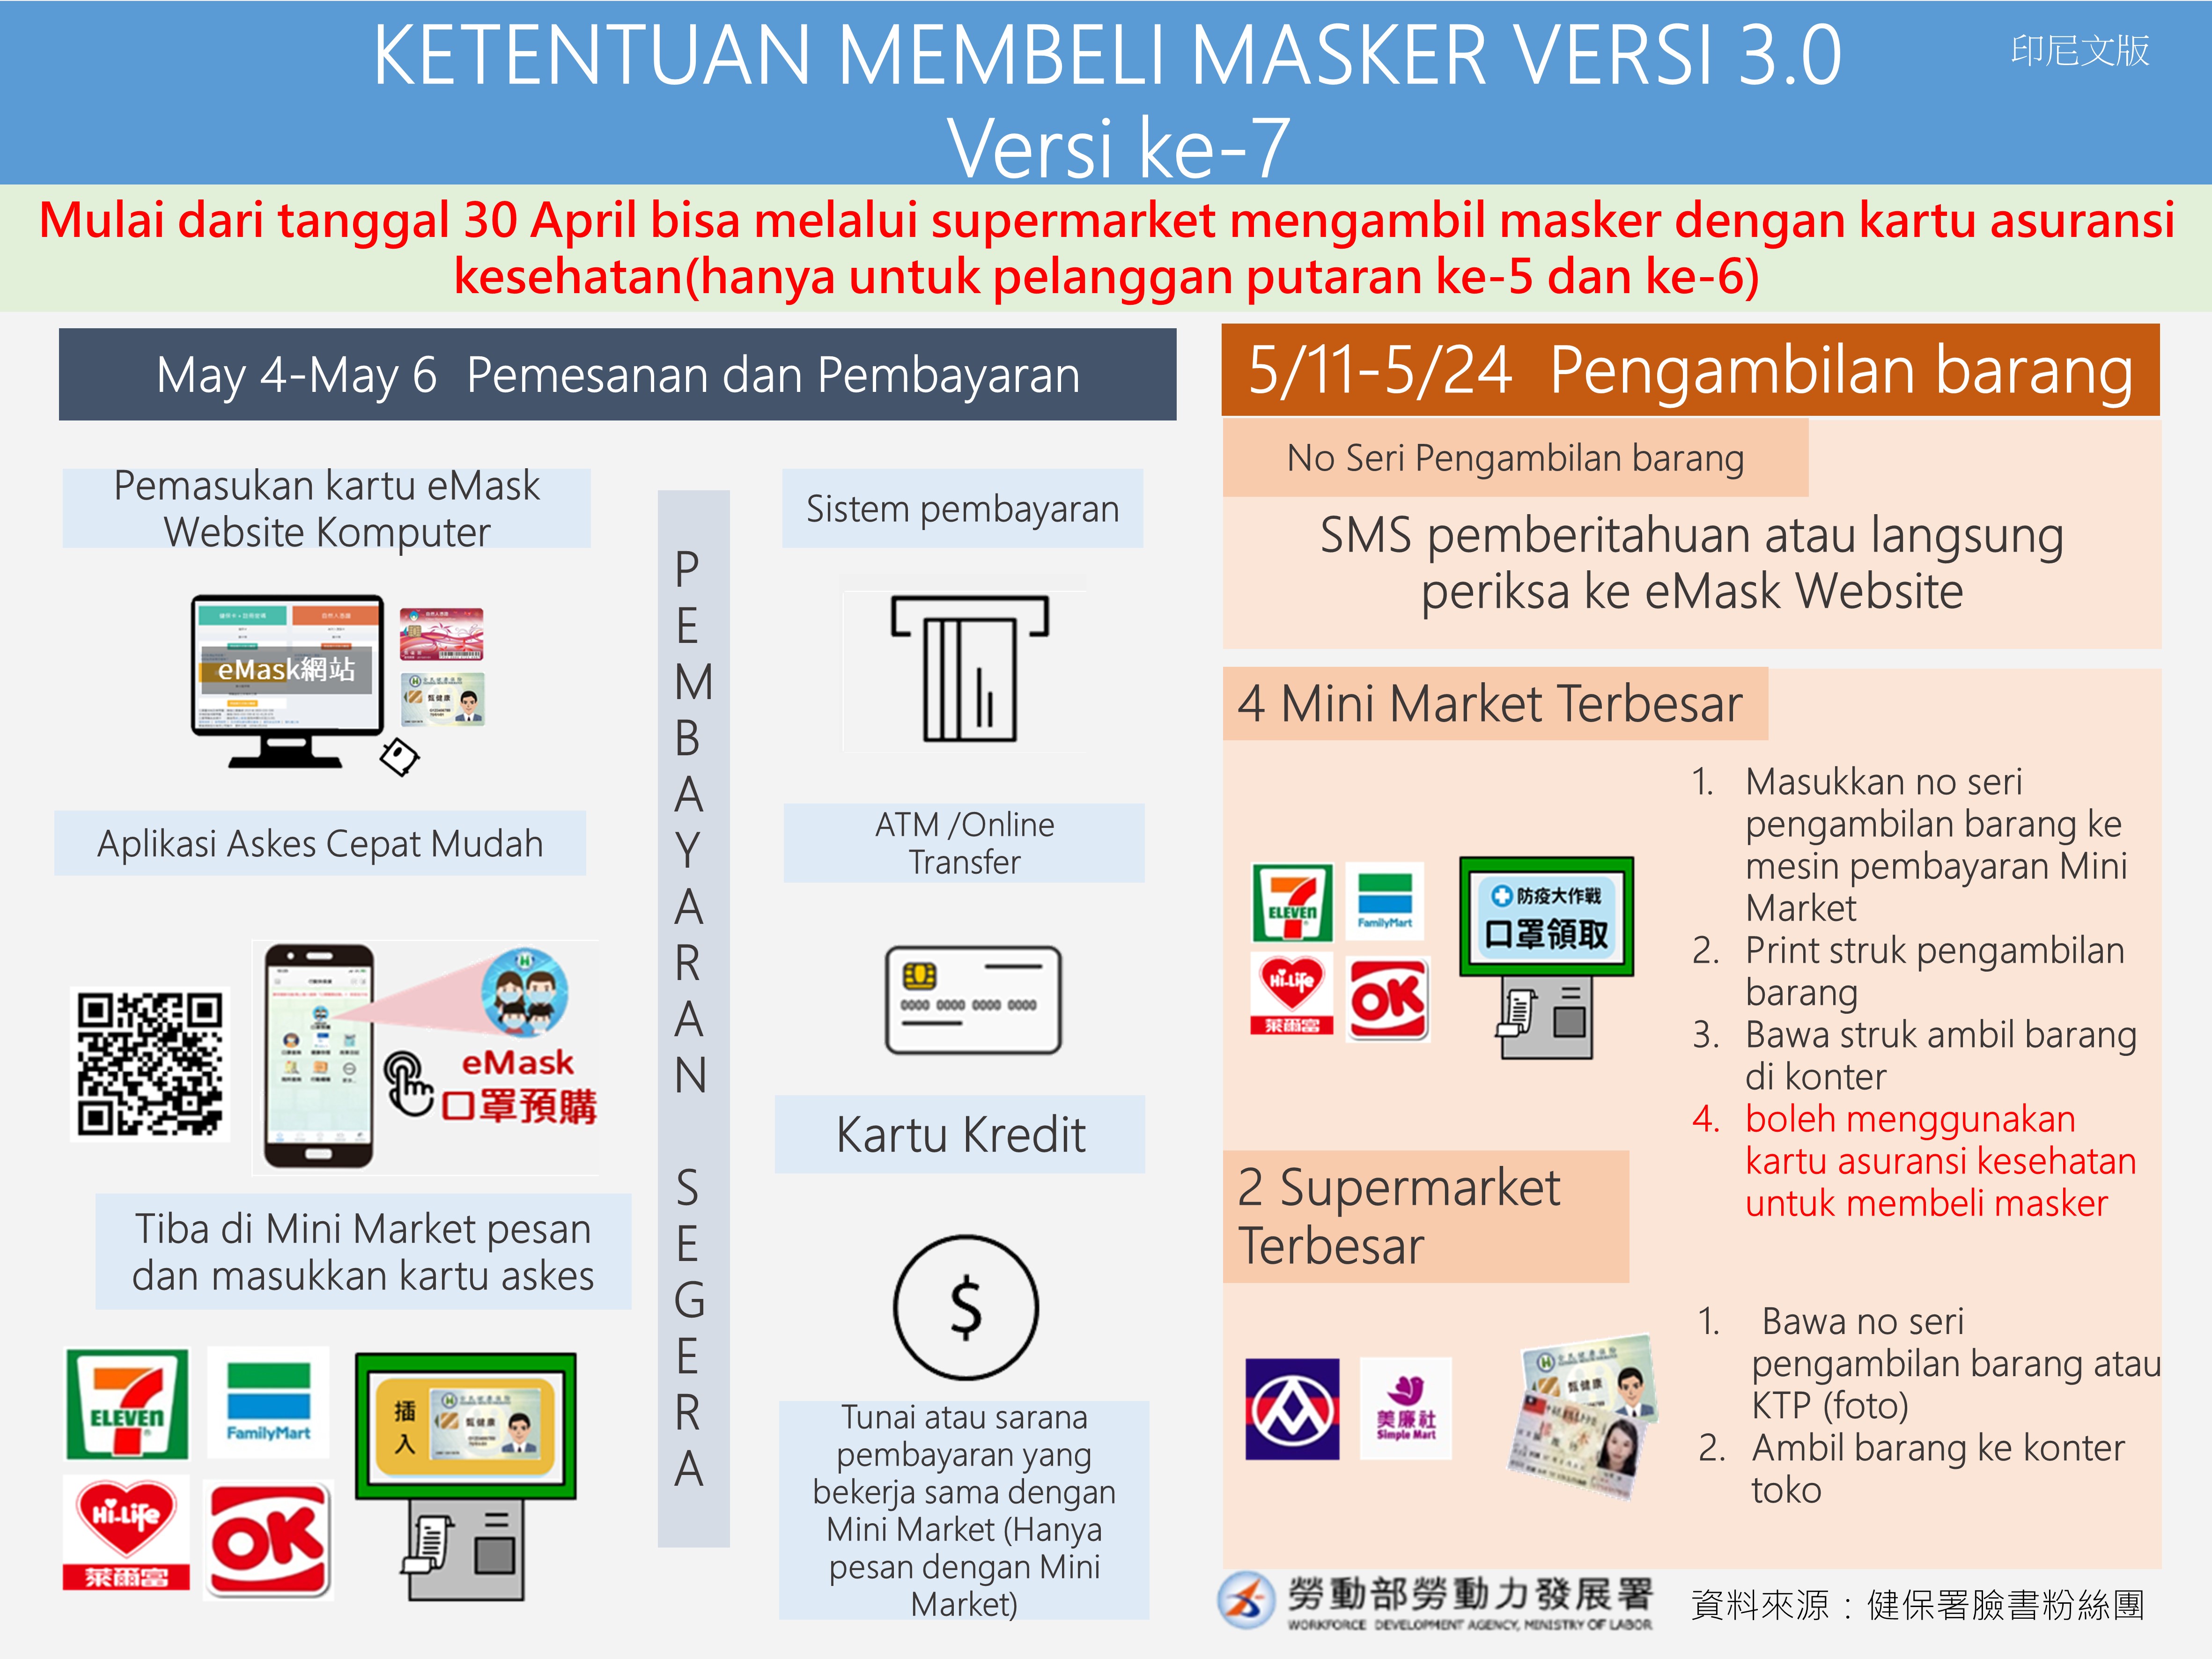 口罩實名制3.0第七輪口罩預購時程-KETENTUAN MEMBELI MASKER VERSI 3.0  Versi ke-7-印尼文.JPG